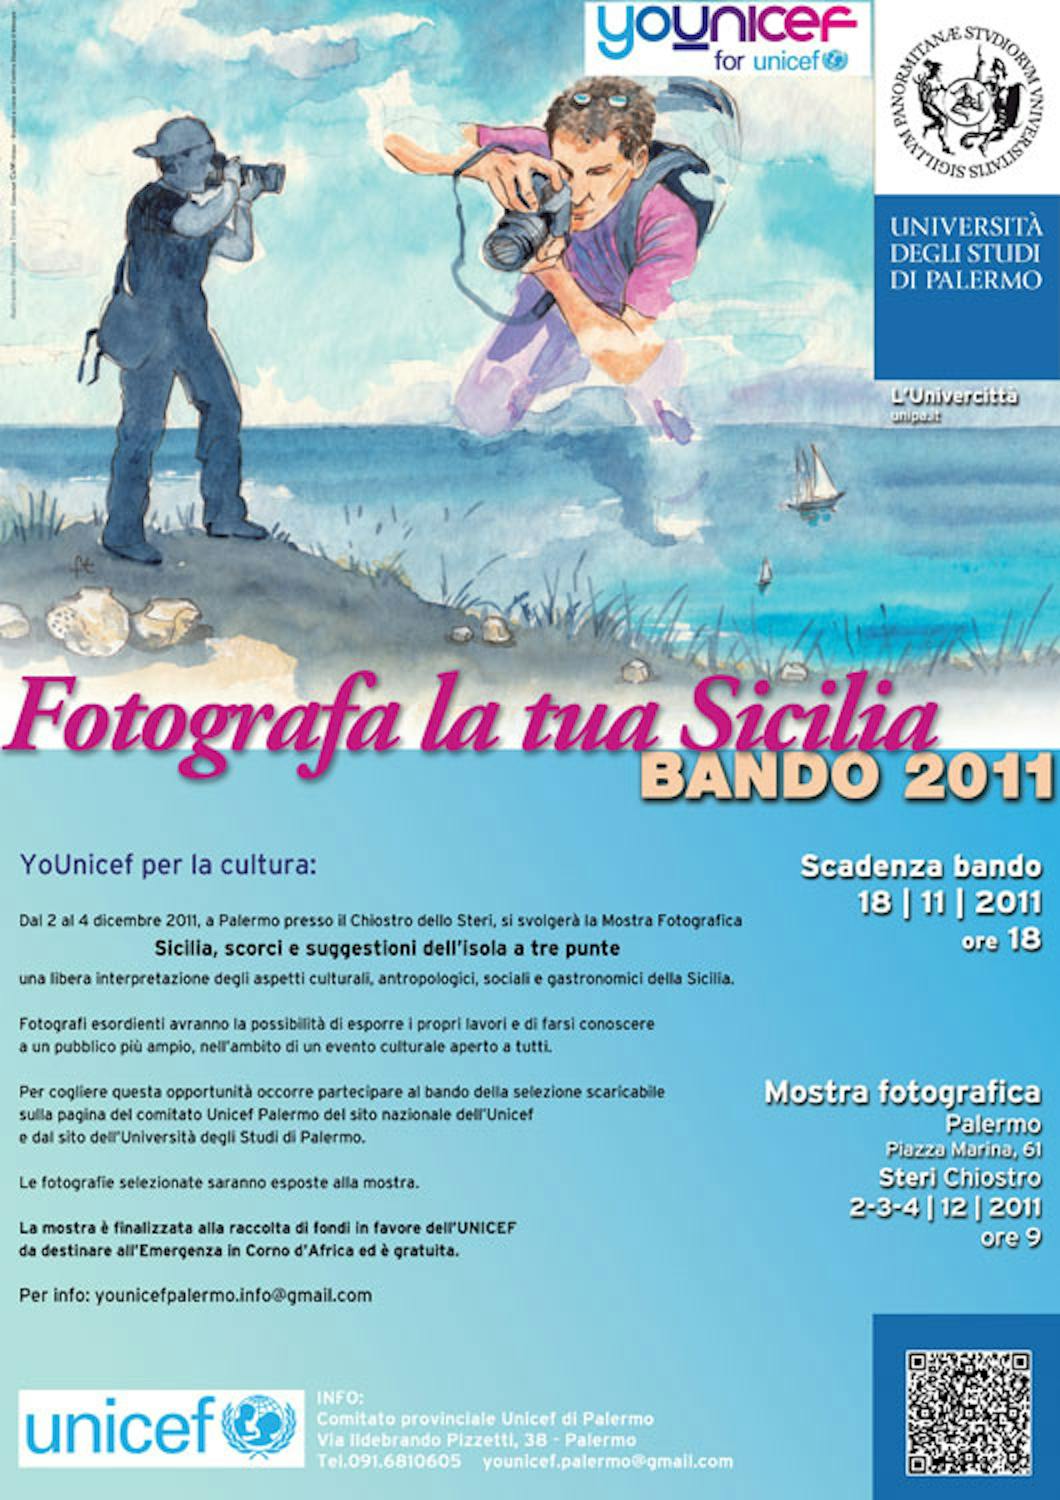 Sicilia, un concorso e una mostra fotografica sull'isola a tre punte